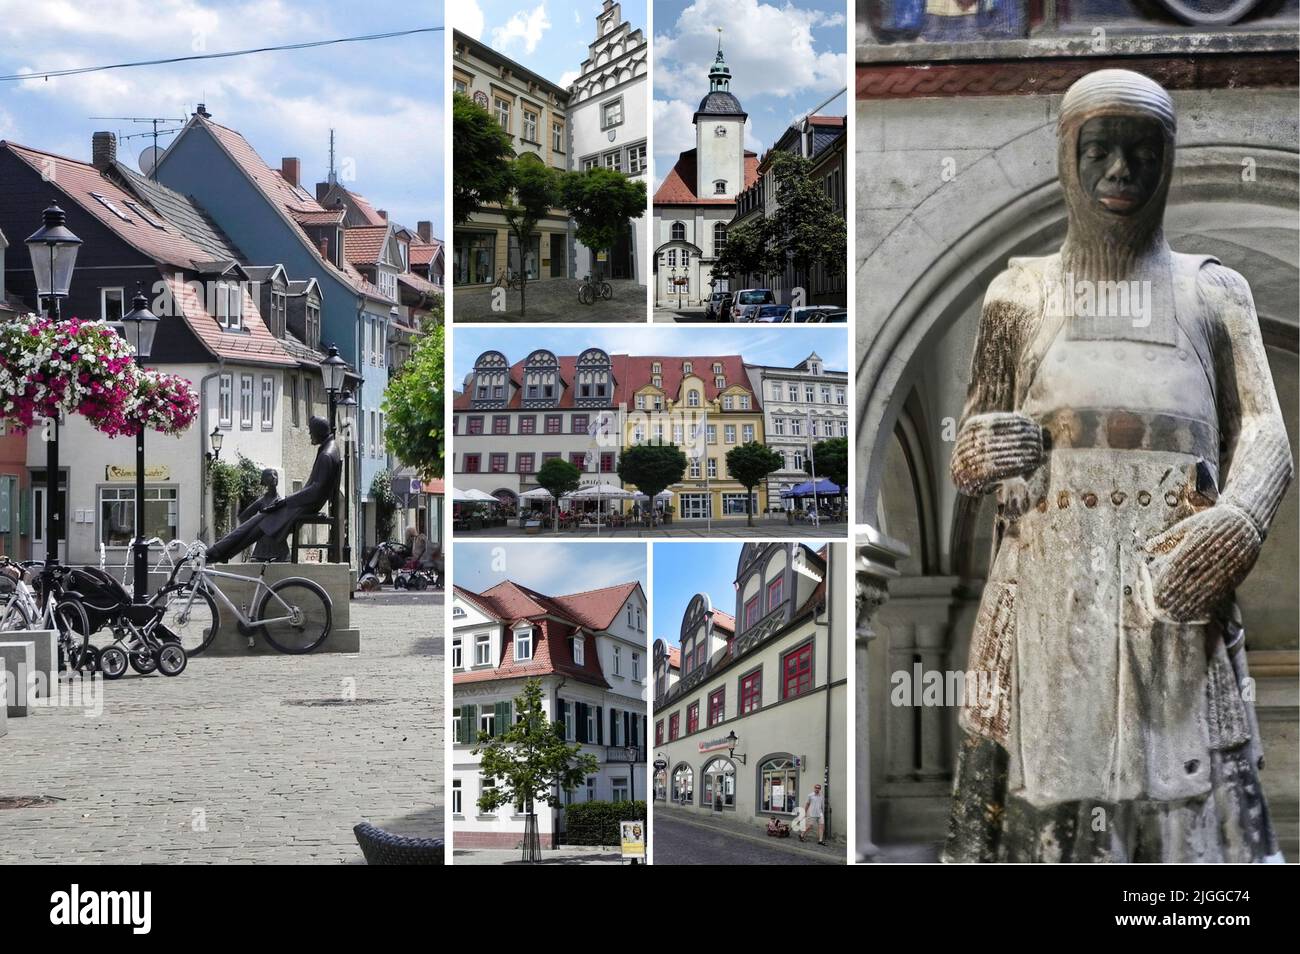 Naumburg es una hermosa y antigua ciudad de Alemania, situada en la Tierra de Sajonia-Anhalt, llena de monumentos y lugares de interés histórico. Foto de stock